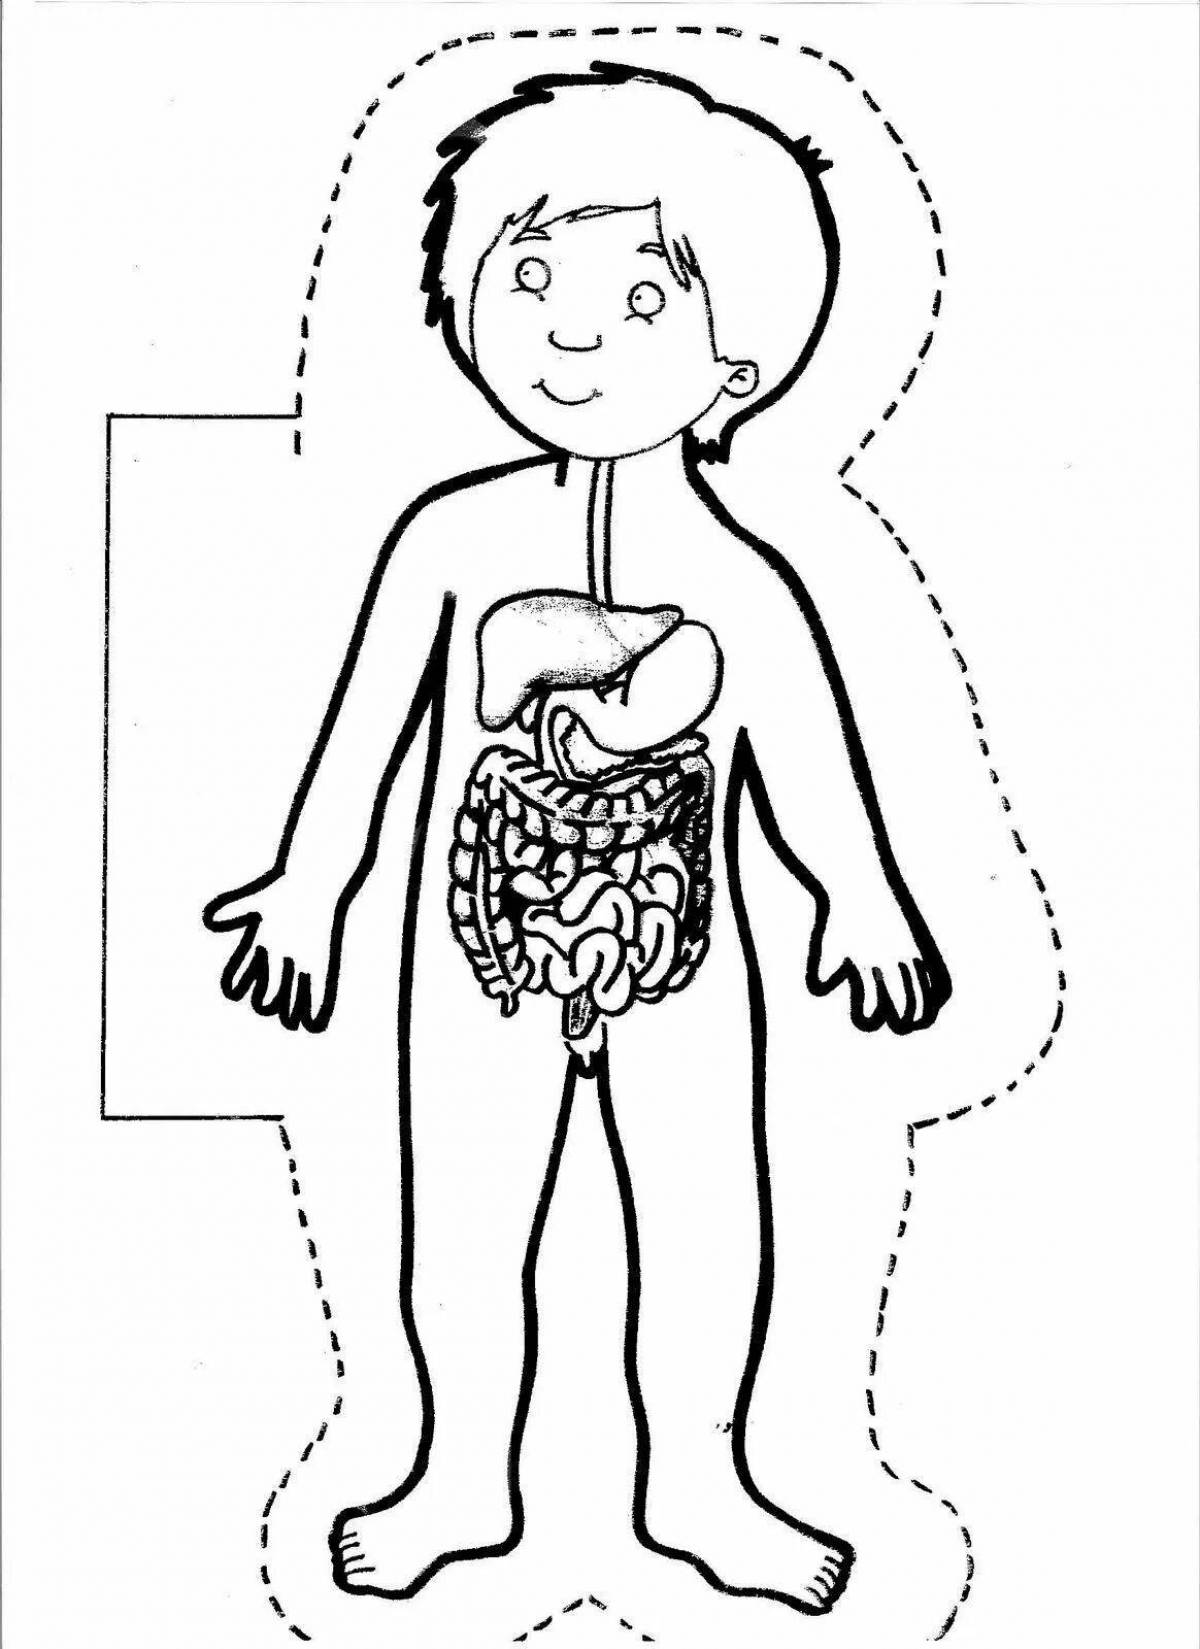 Human structure internal organs #9